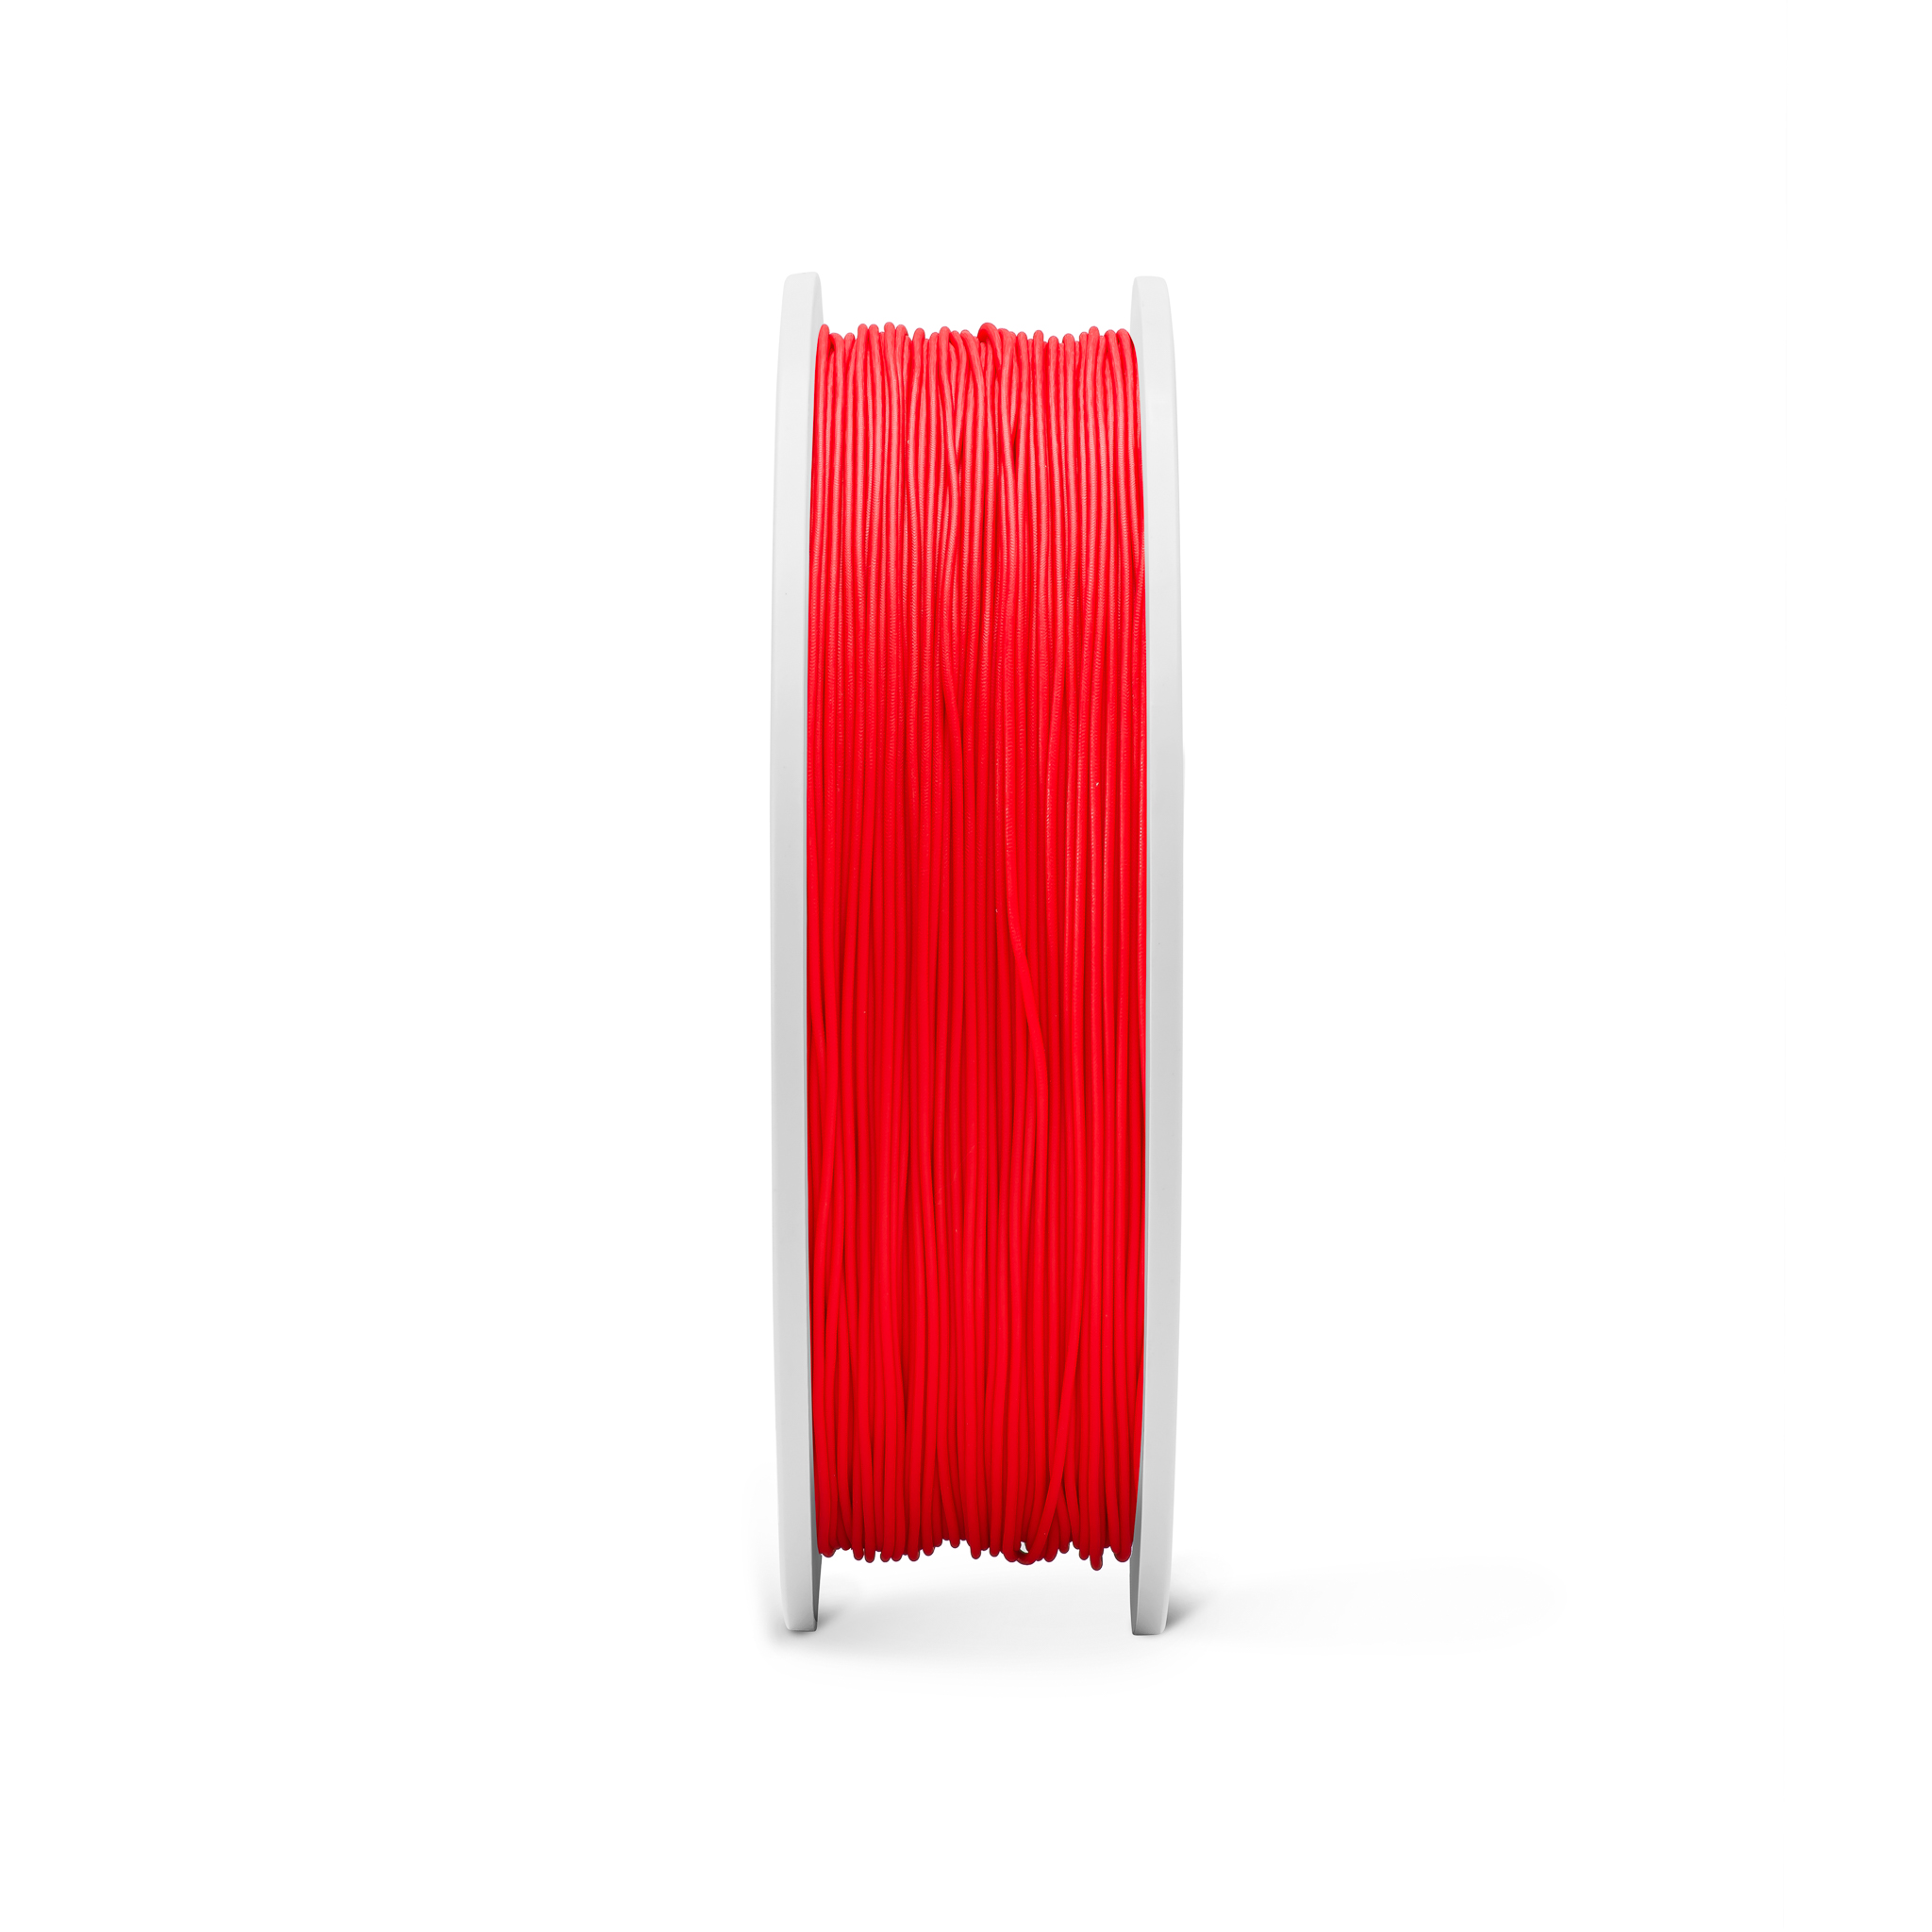 Fiberlogy FIBERFLEX 30D flexibles Filament 1,75 mm